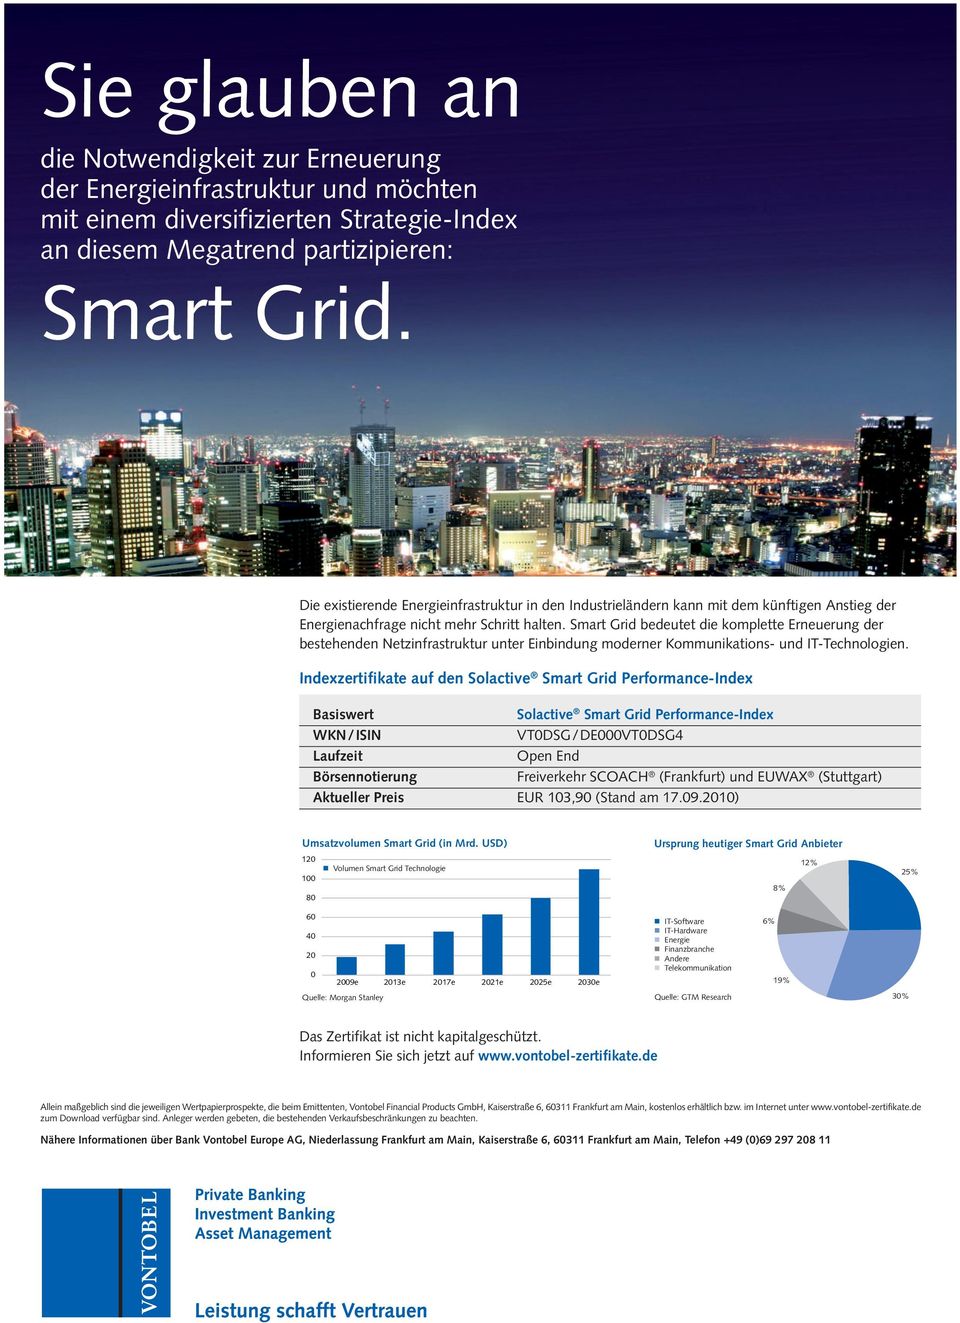 Smart Grid bedeutet die komplette Erneuerung der bestehenden Netzinfrastruktur unter Einbindung moderner Kommunikations- und IT-Technologien.